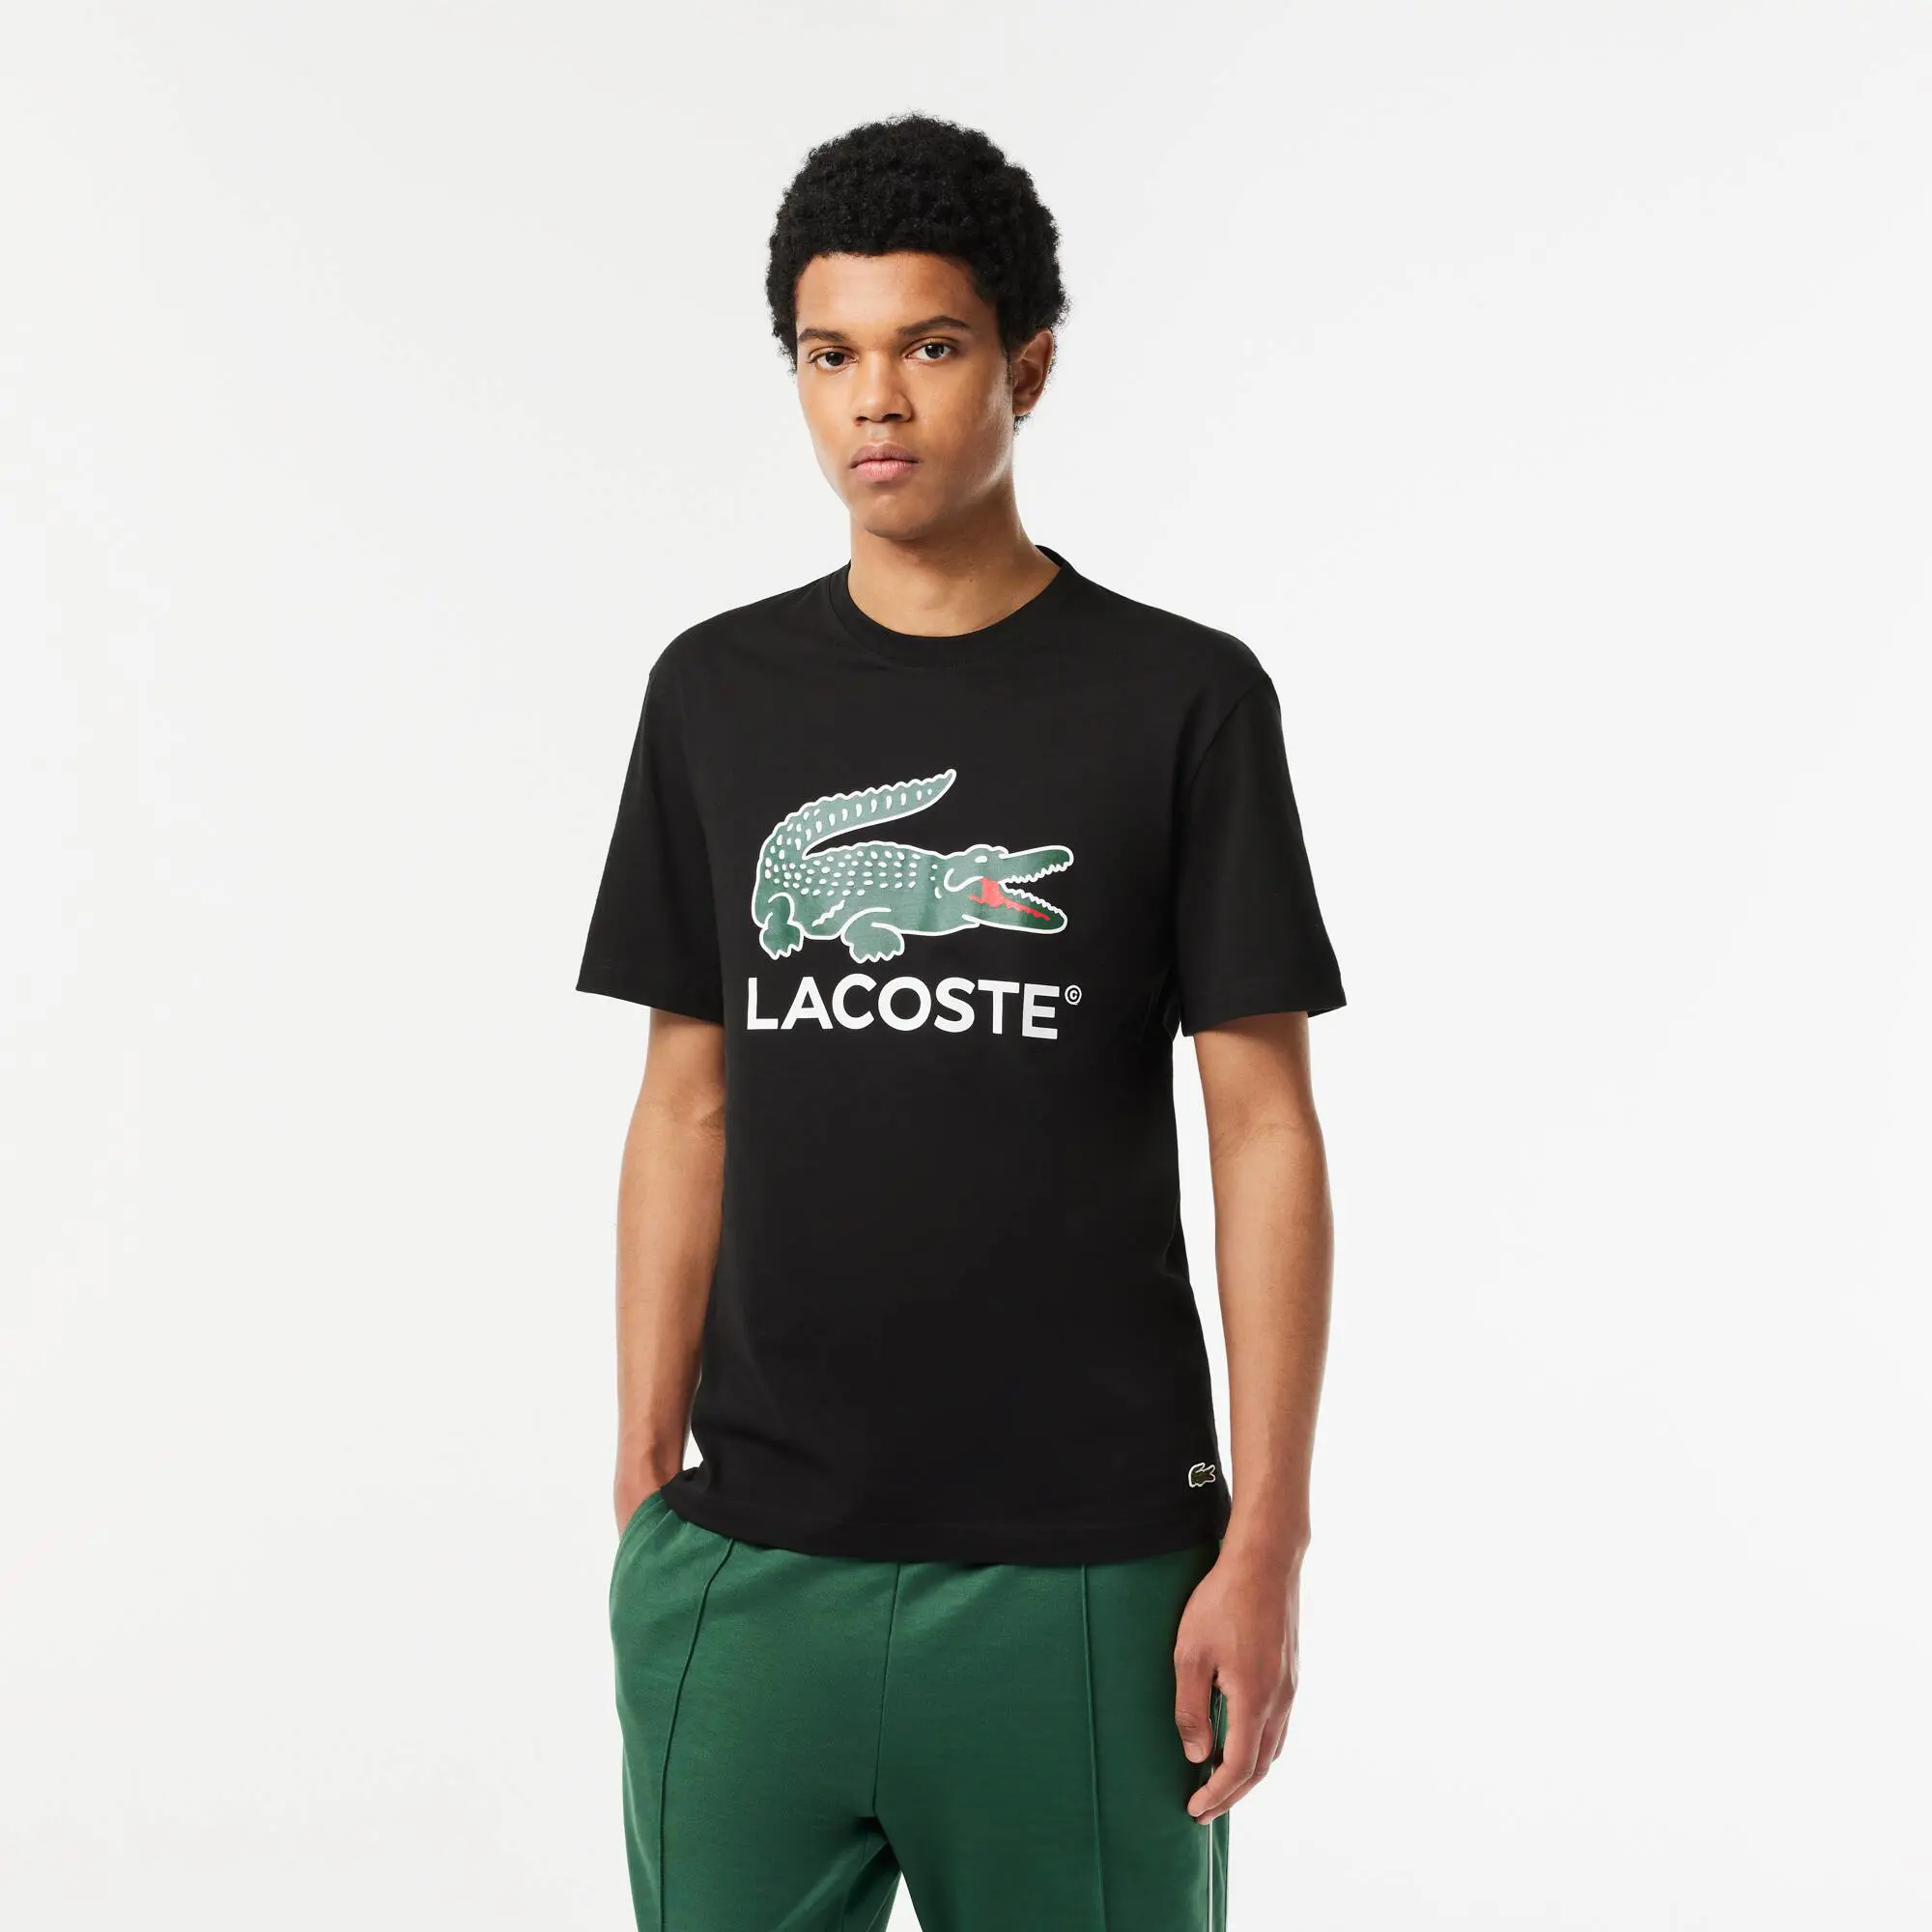 Lacoste Men's Cotton Jersey Signature Print T-Shirt. 1